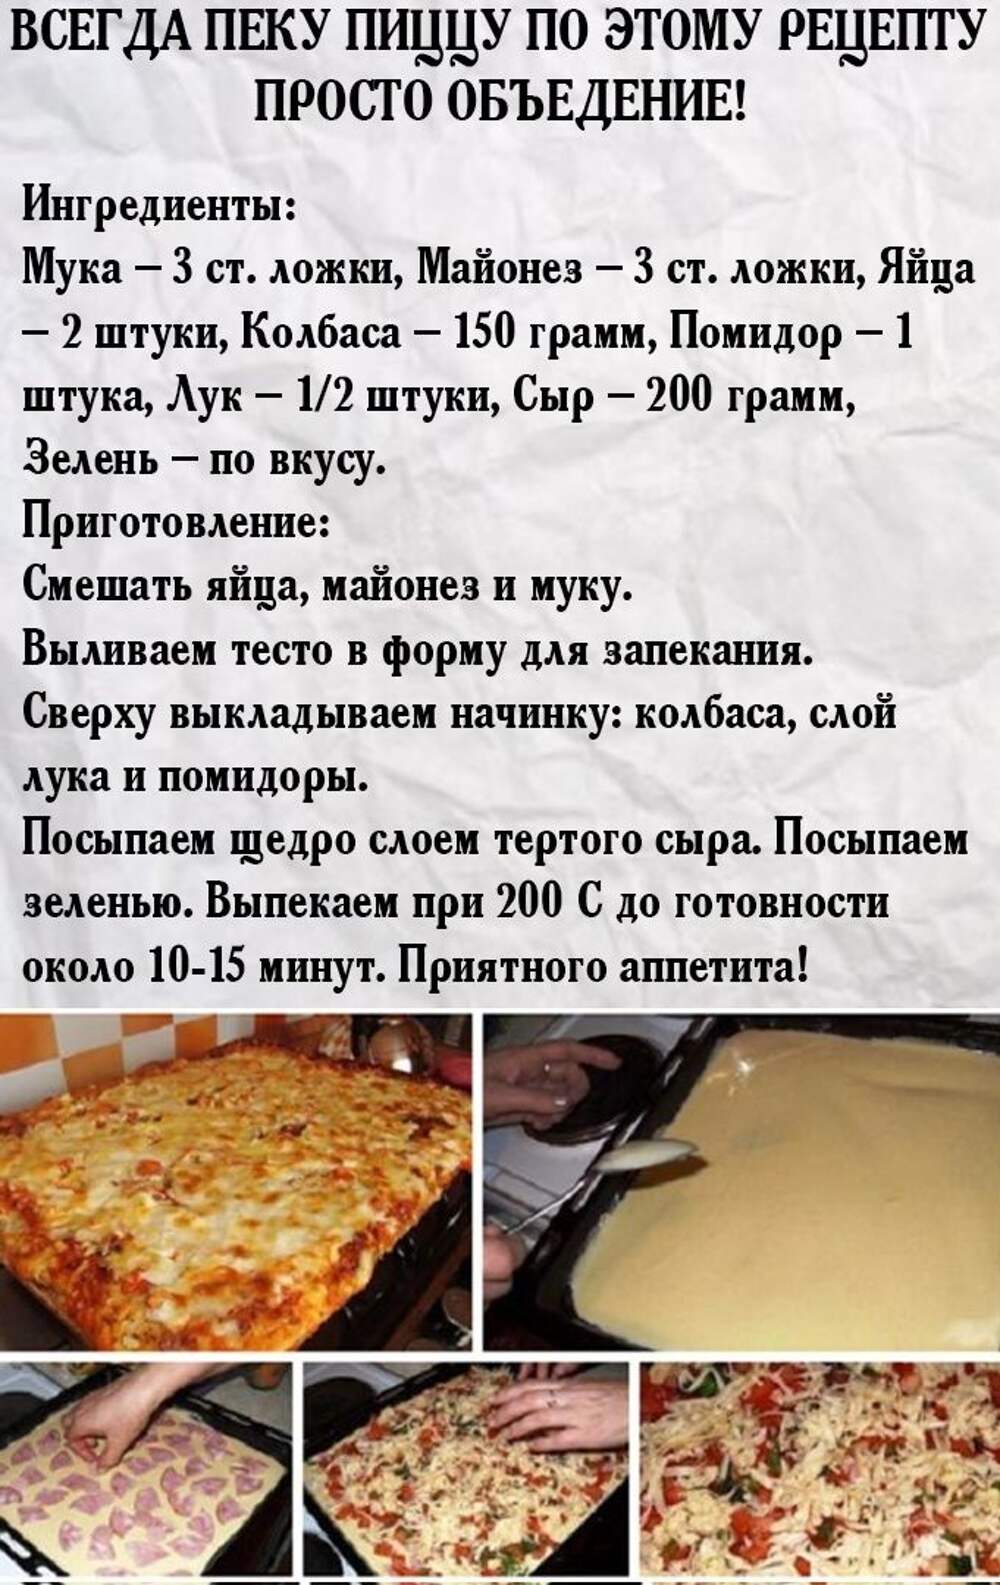 рецепт пиццы в духовке начинка для пиццы в домашних условиях (120) фото